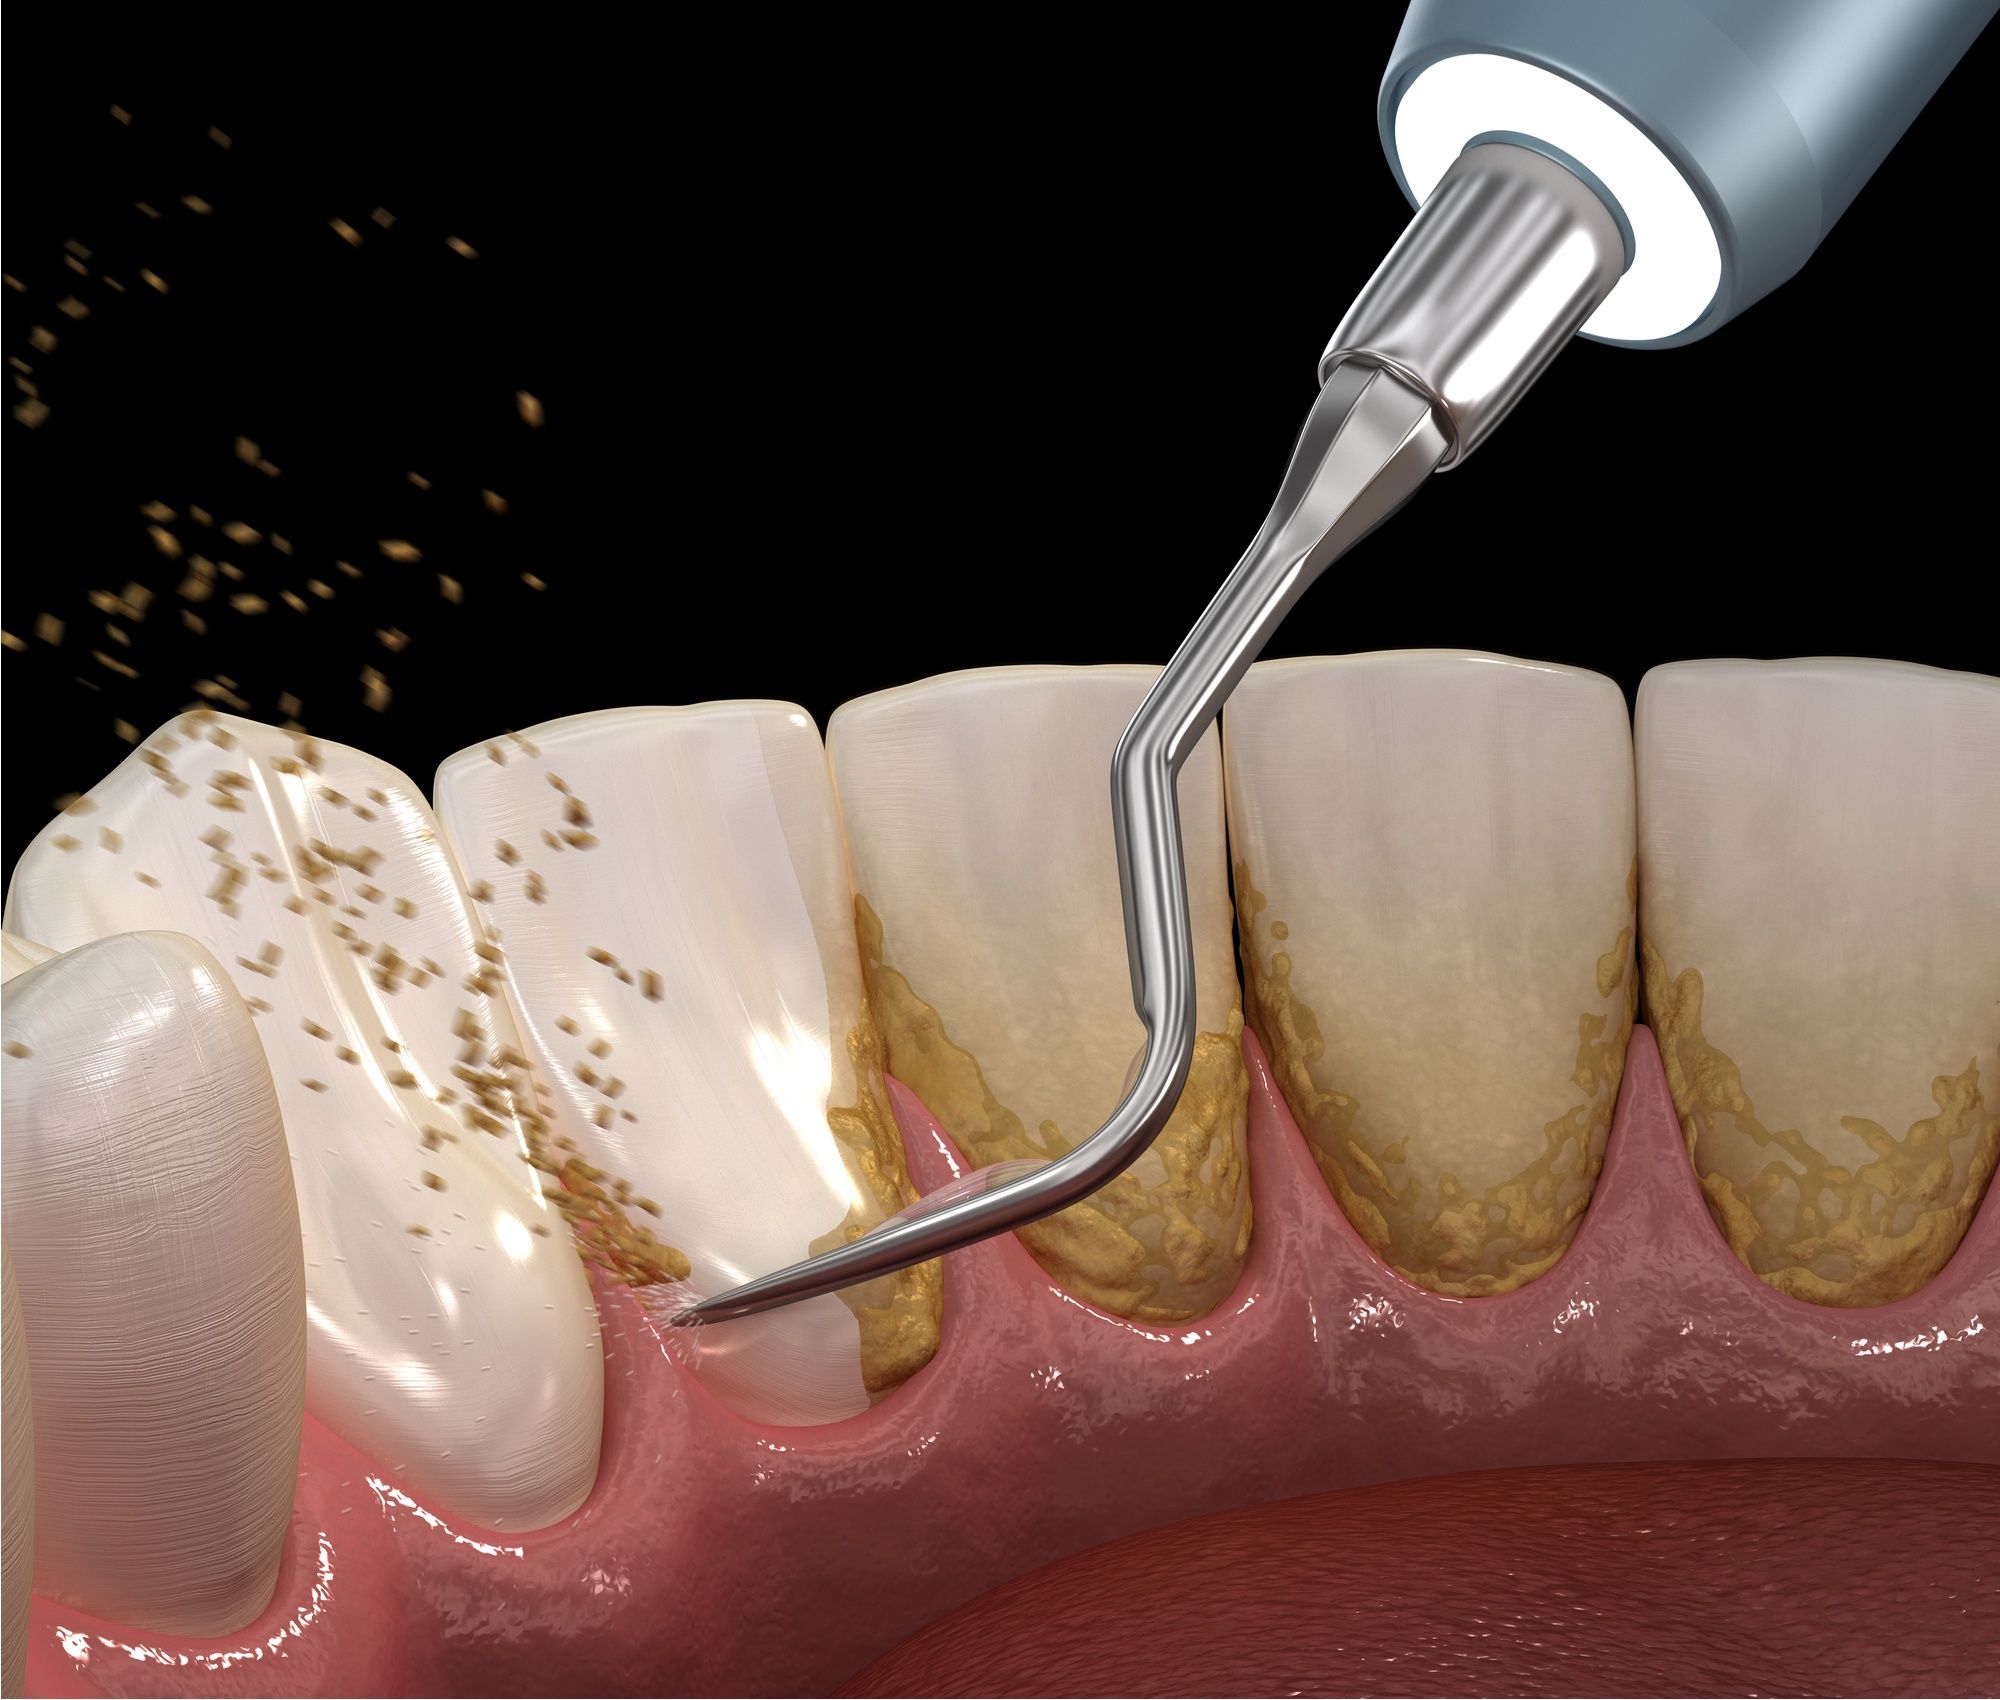 اضرار تبييض الاسنان وتنظيف الاسنان